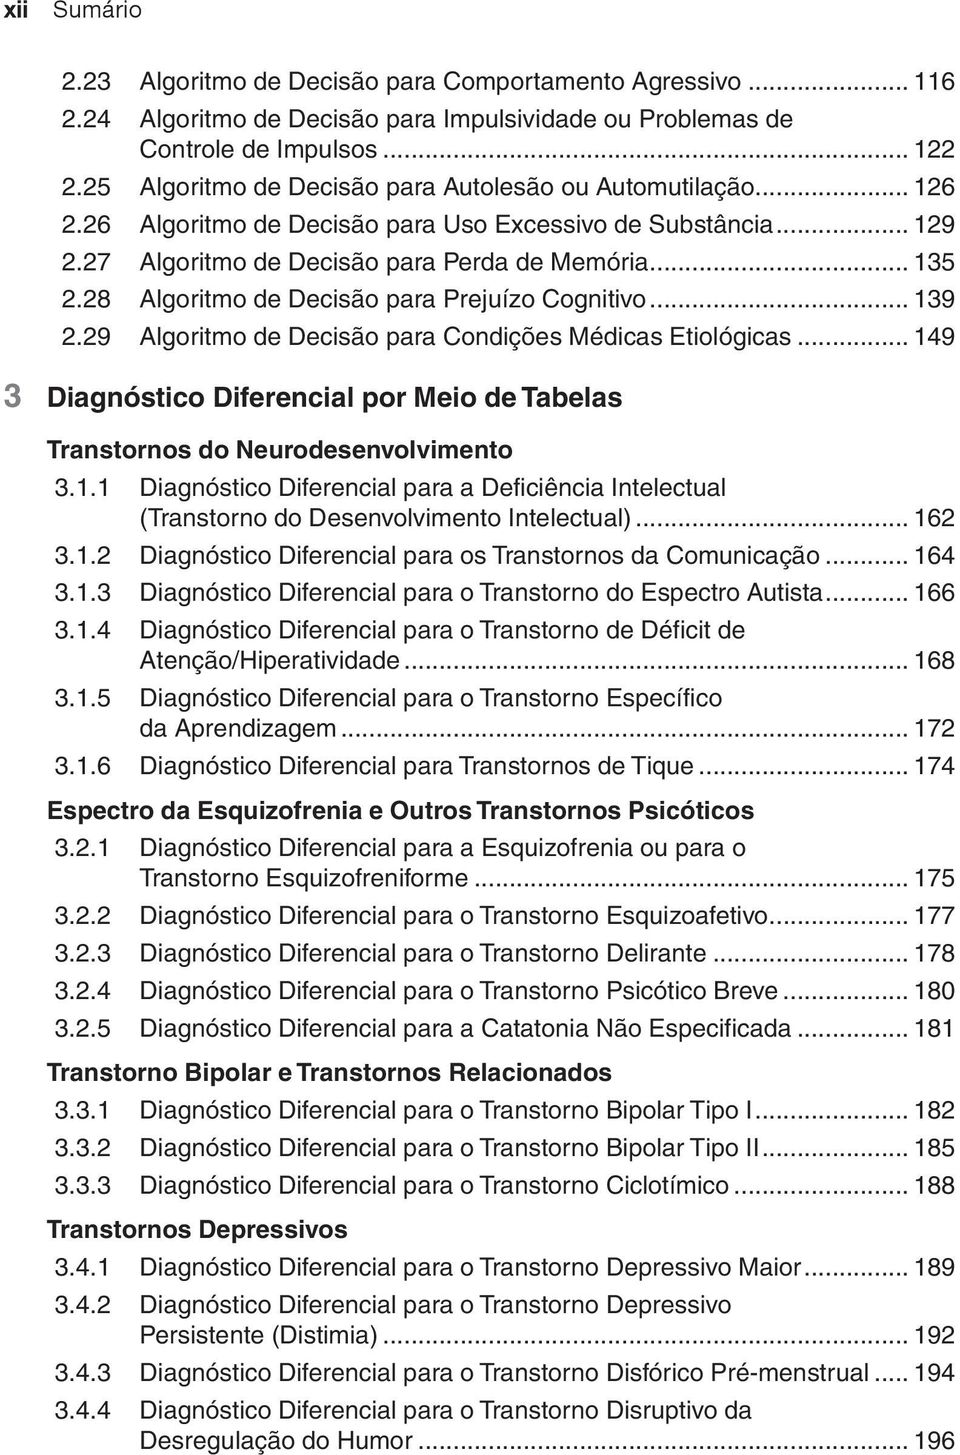 28 Algoritmo de Decisão para Prejuízo Cognitivo... 139 2.29 Algoritmo de Decisão para Condições Médicas Etiológicas.